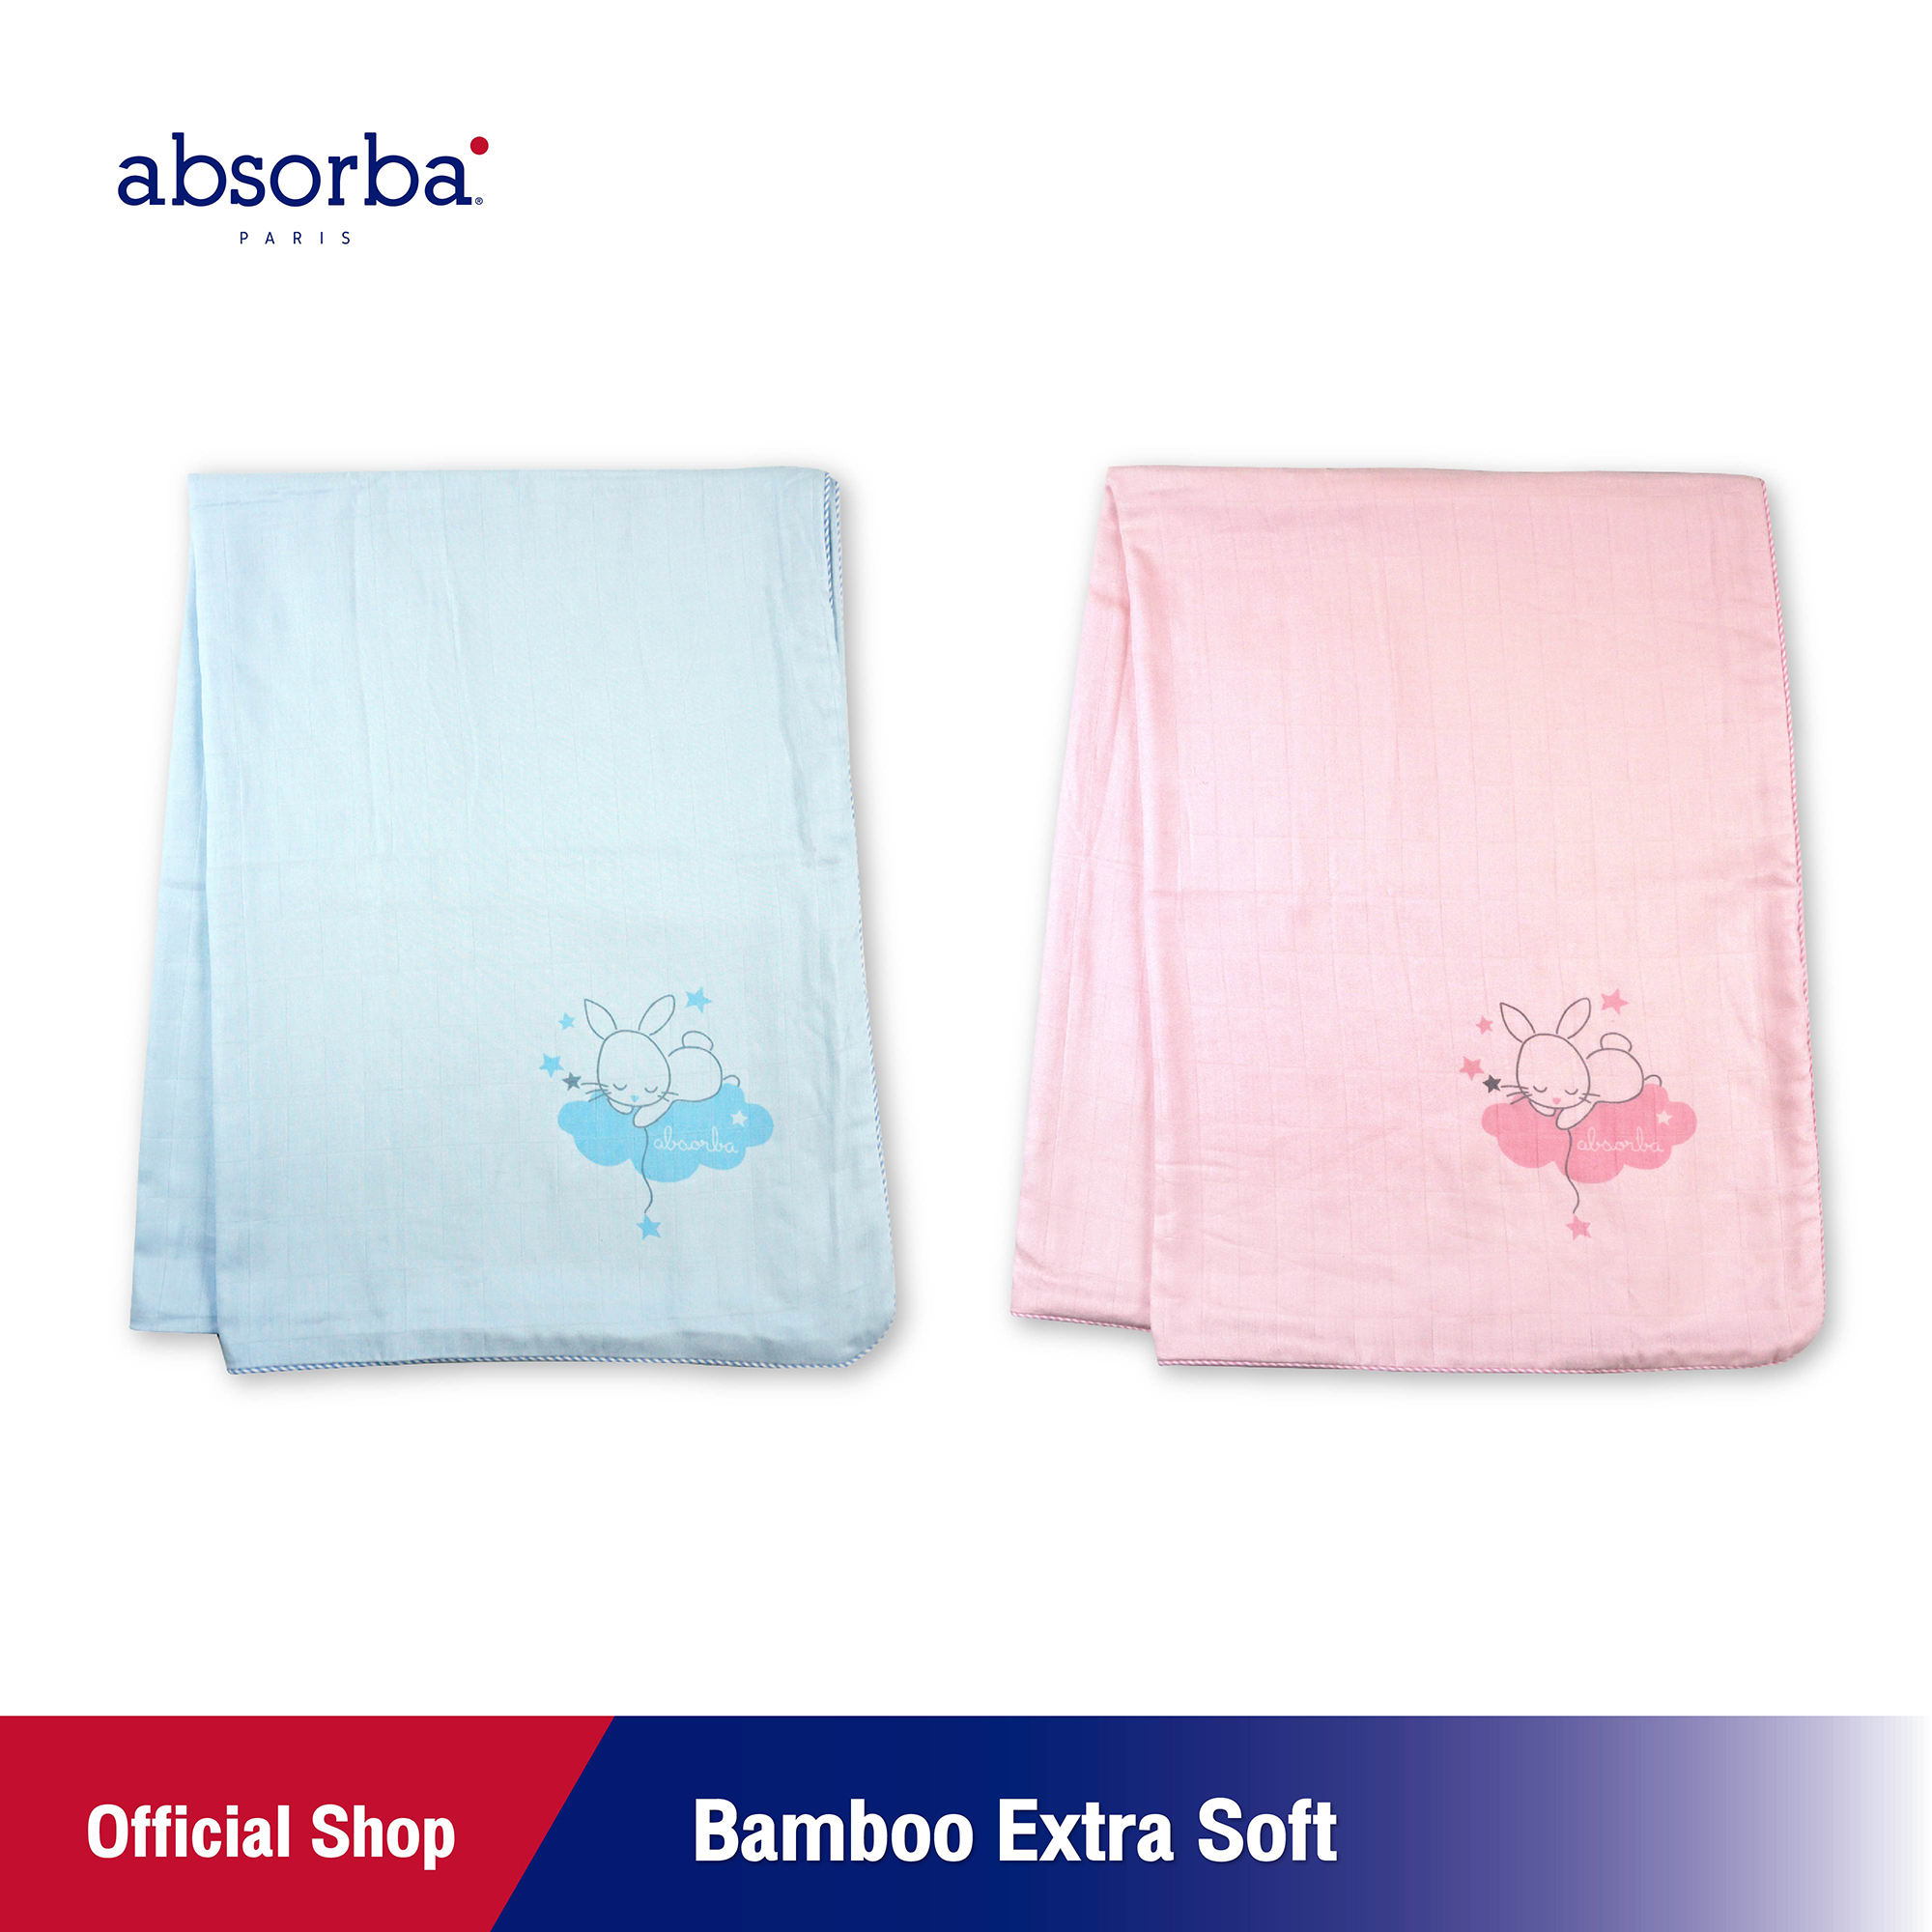 ราคา absorba (แอ๊บซอร์บา) ผ้าห่มเด็ก Bamboo Extre Soft 31x41 นิ้ว (มีให้เลือก 2 สี / ฟ้า ,ชมพู) - R6Y424